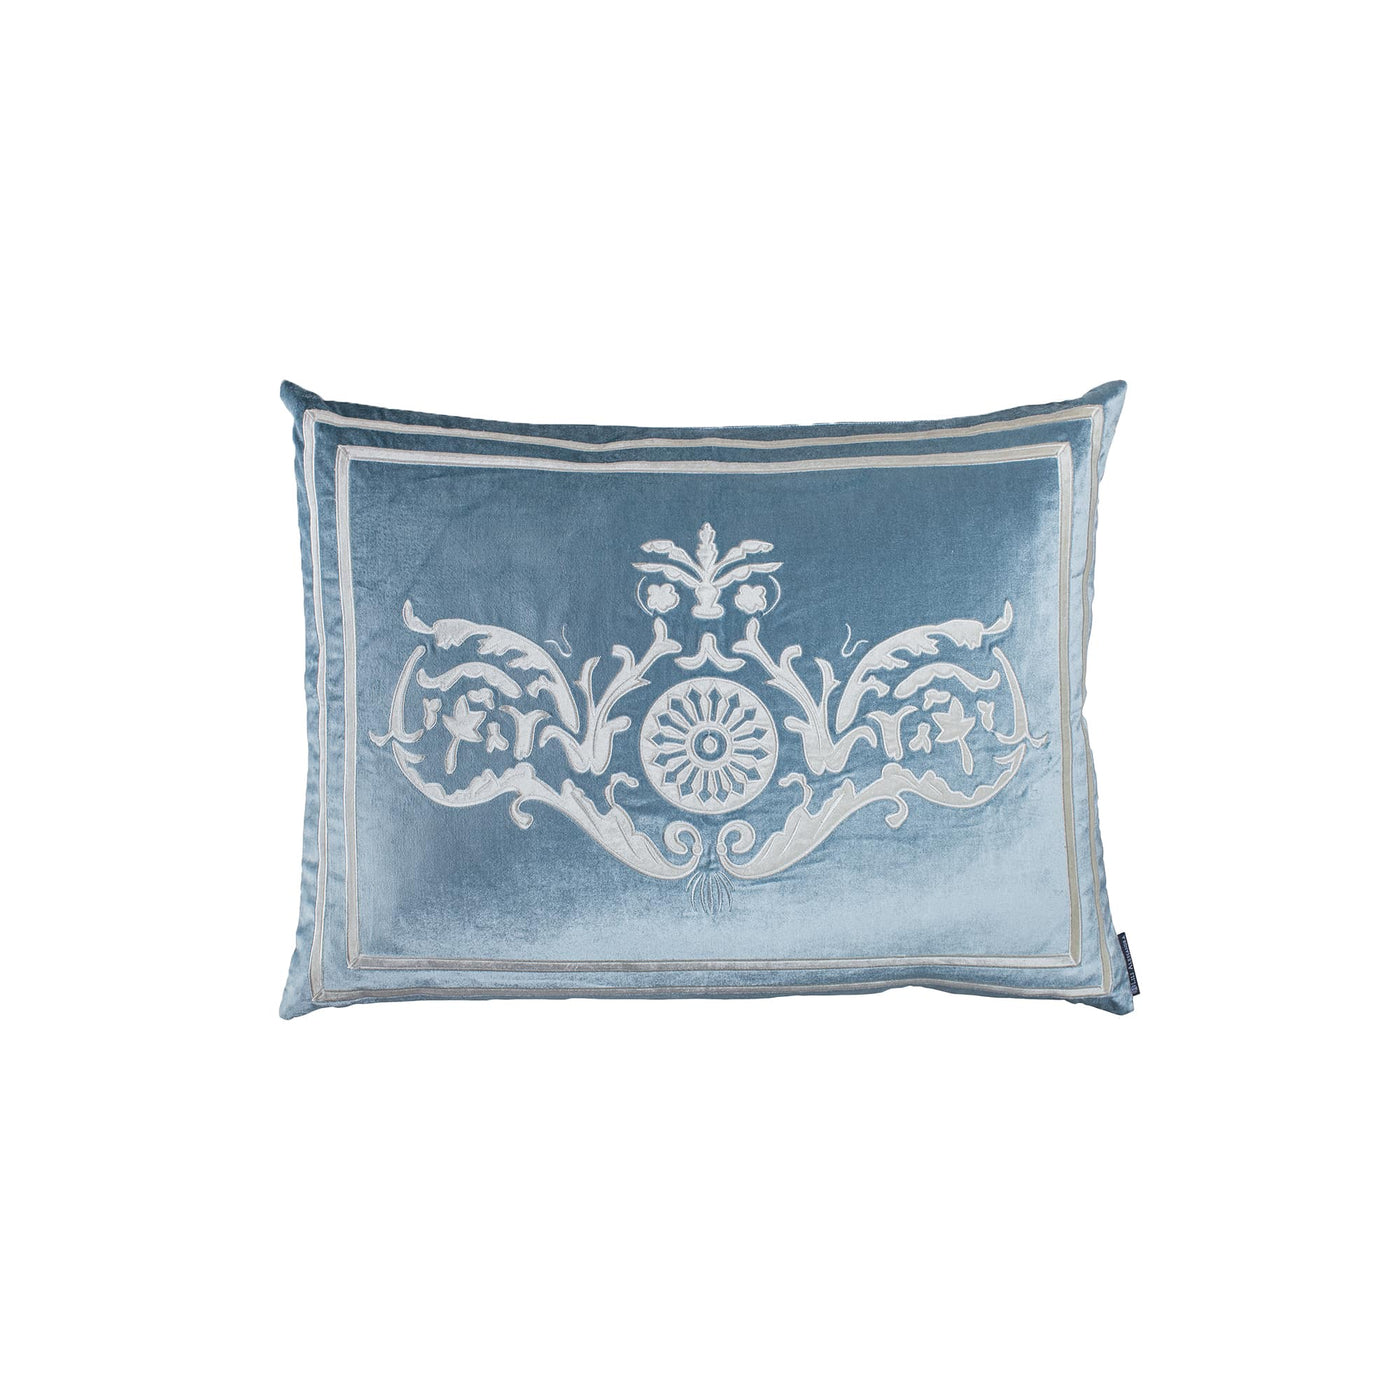 Paris Standard Sham Ice Blue / Ivory Velvet 20X26 (Pillow Insert Not Included)